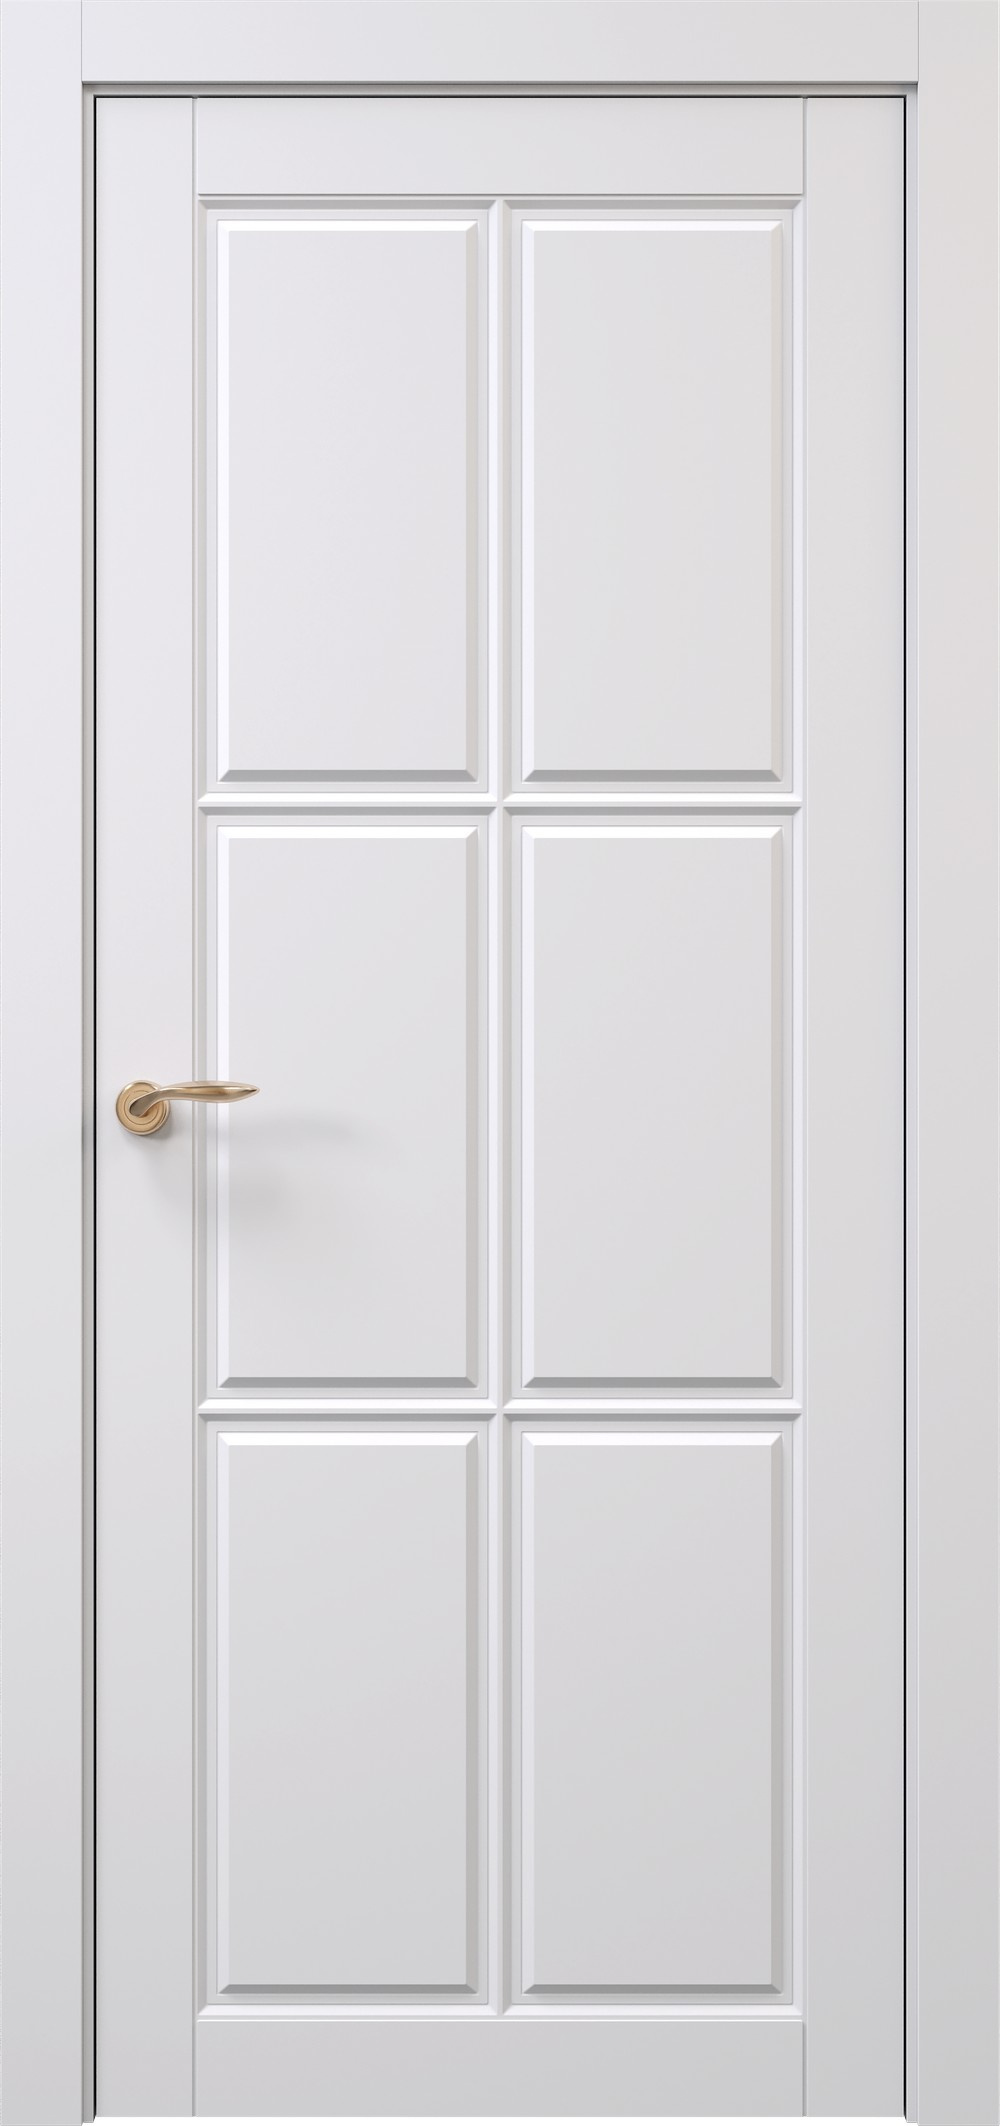 Prestige Межкомнатная дверь Oxford 2 ДГ, арт. 29213 - фото №1